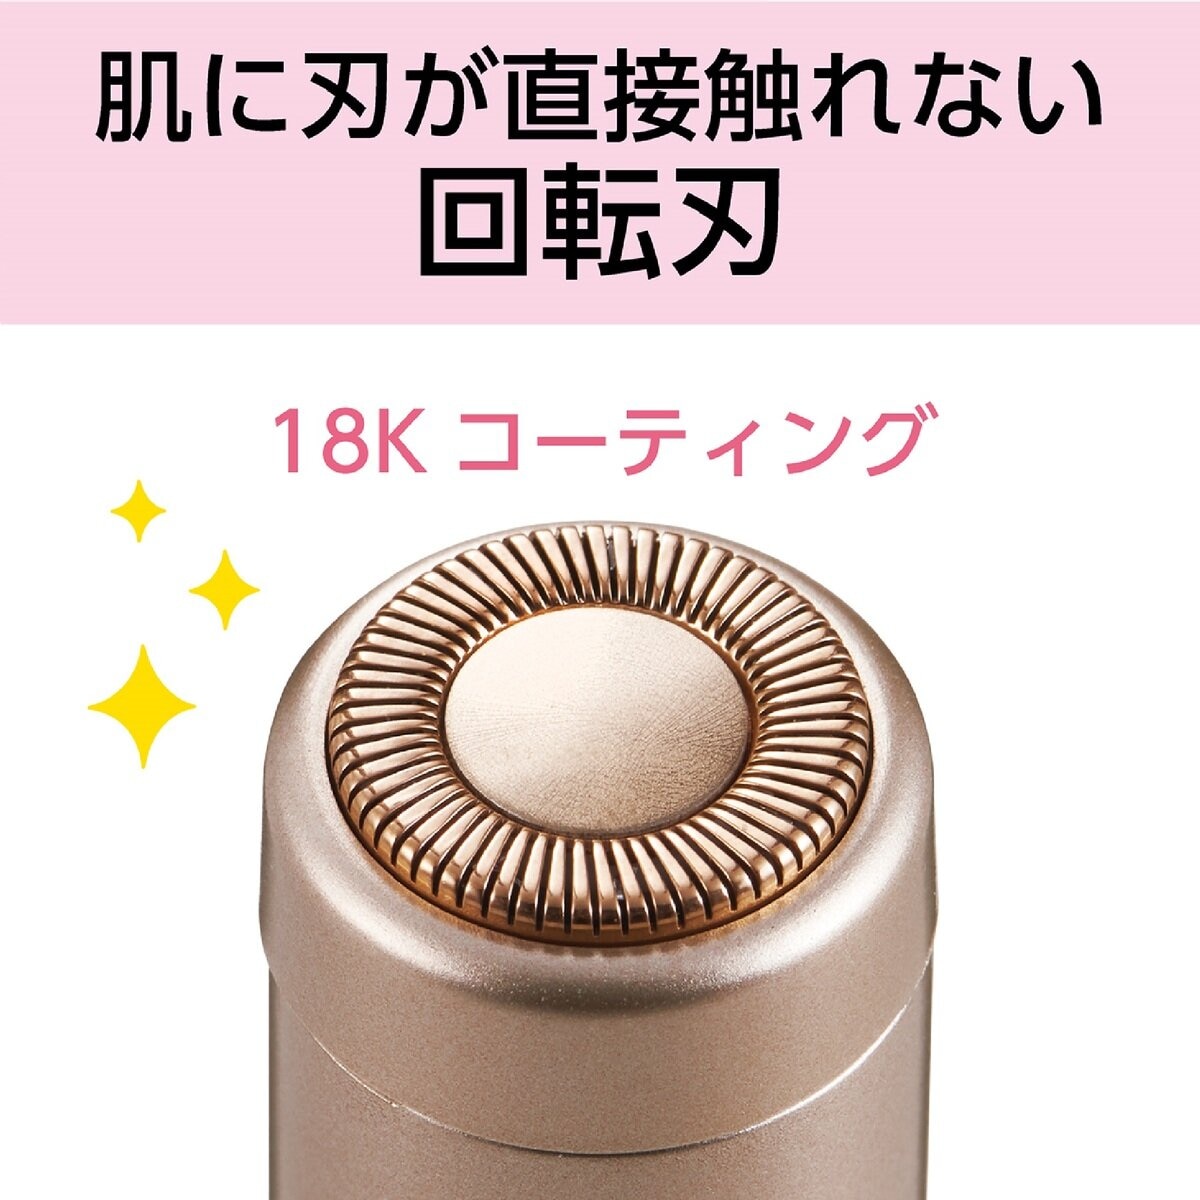 コイズミ フェイスシェーバー KLC0730 Costco Japan